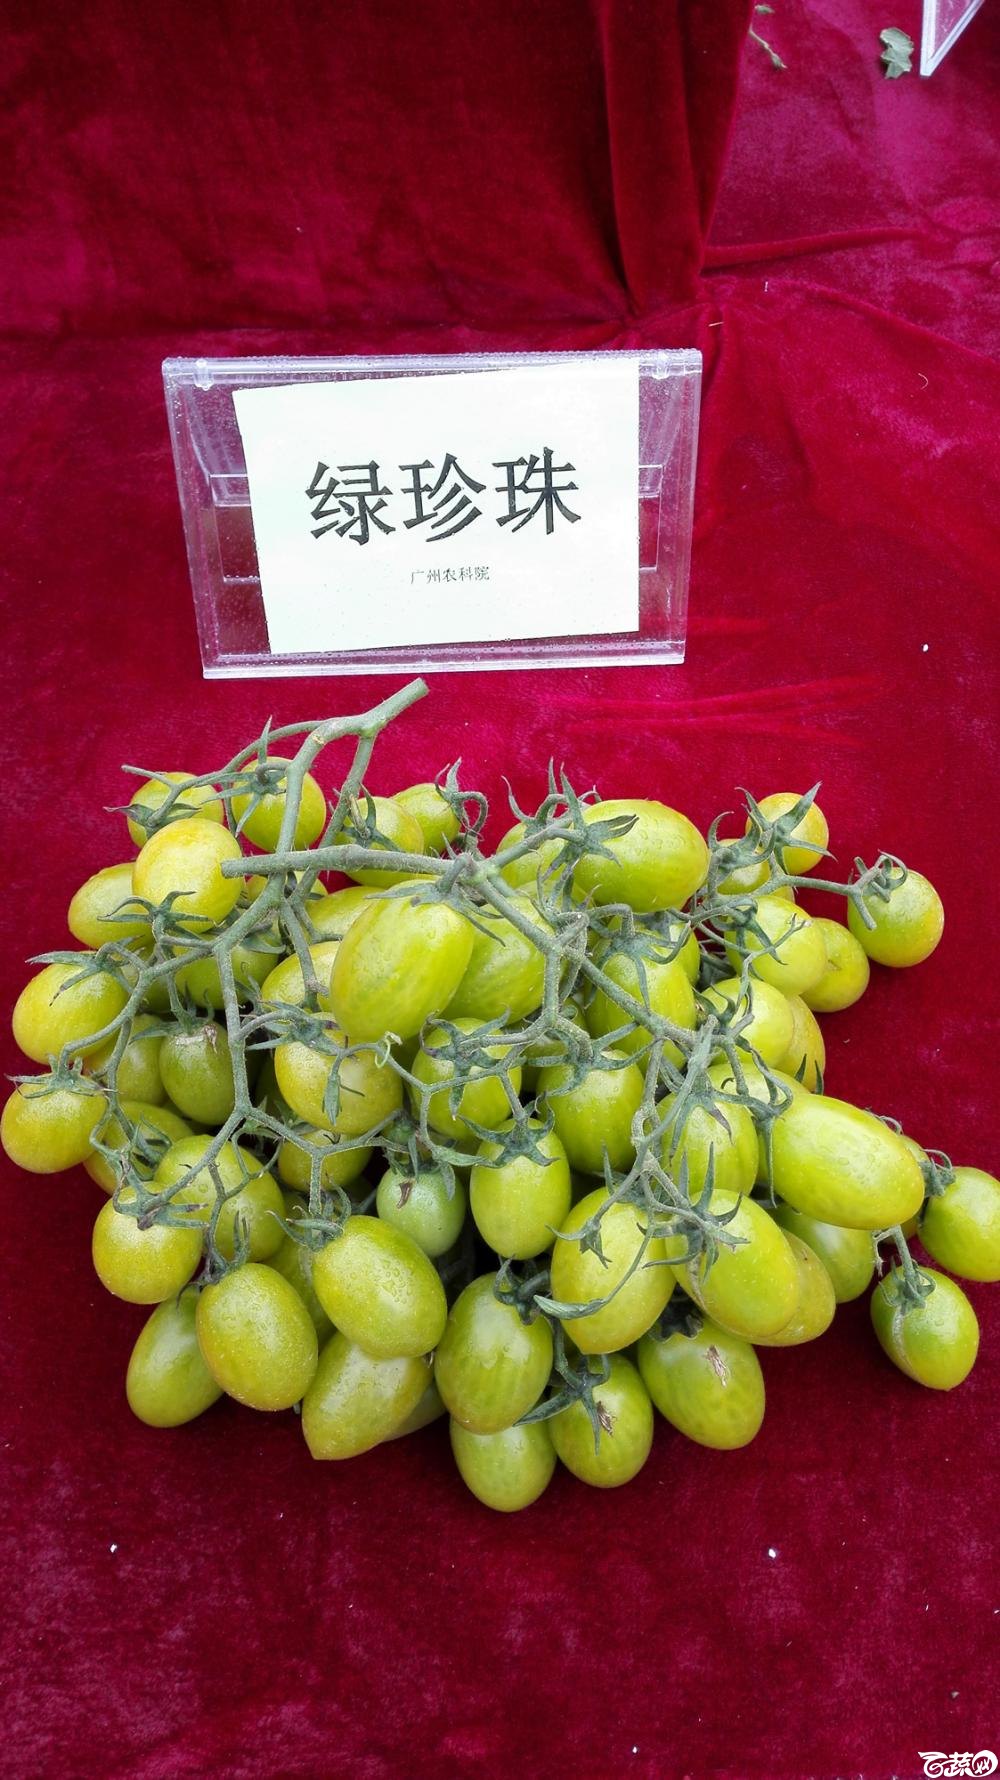 2014年12月8号中山蔬菜新品种展示会_番茄_007.jpg